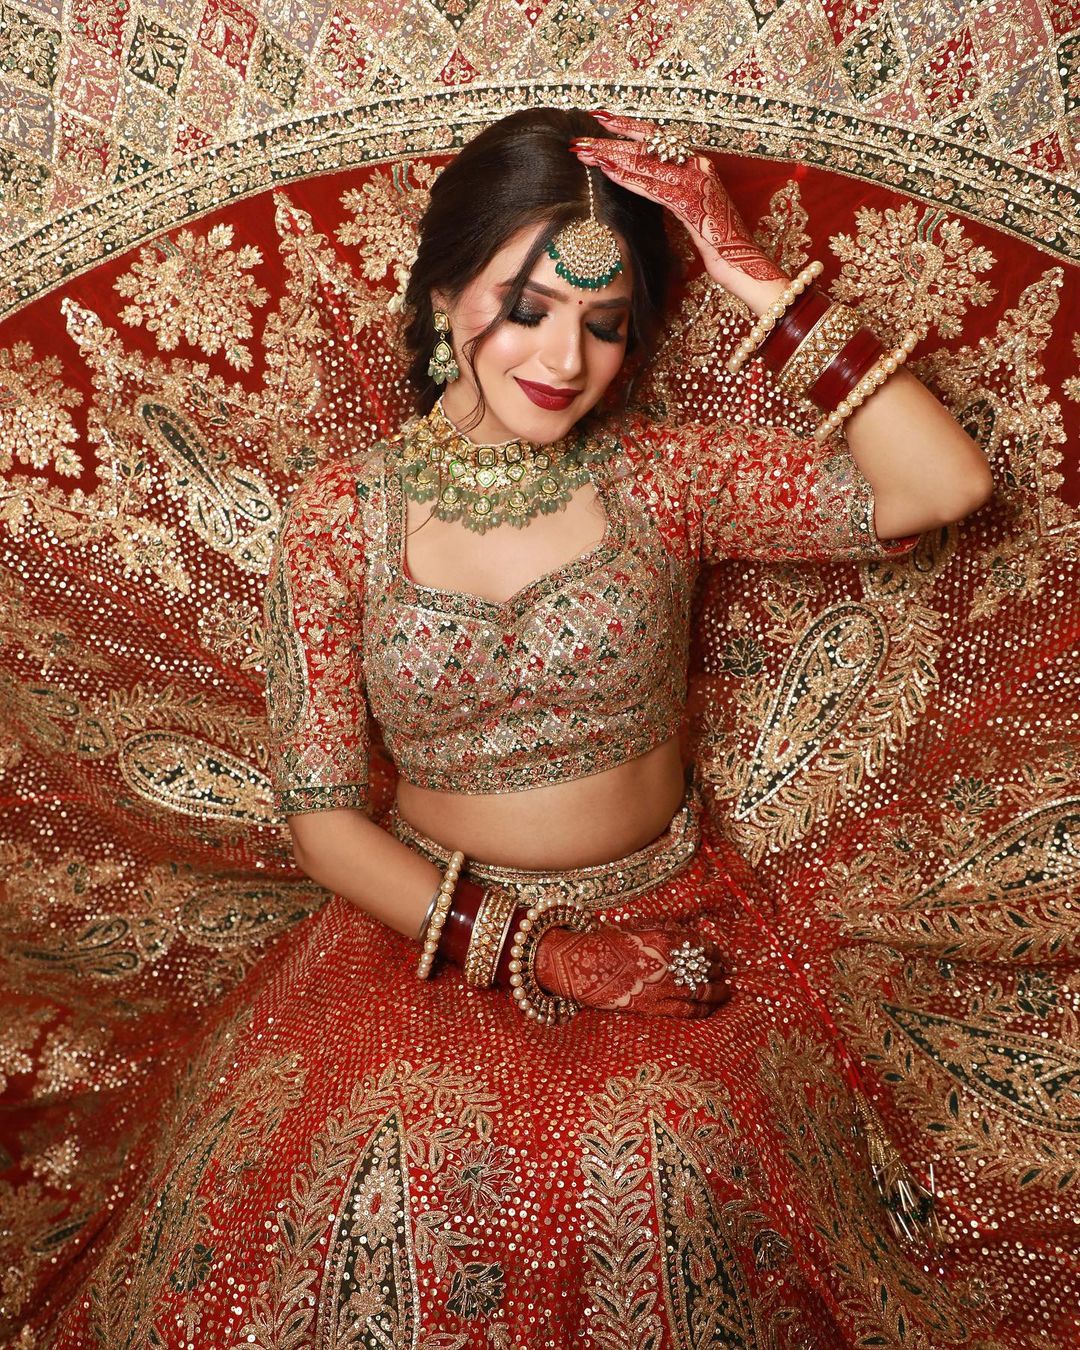 Fresh Orange Bridal Lehengas for 2022 Weddings That Are Winning Hearts! | Orange  lehenga, Indian bridal outfits, Indian bridal fashion